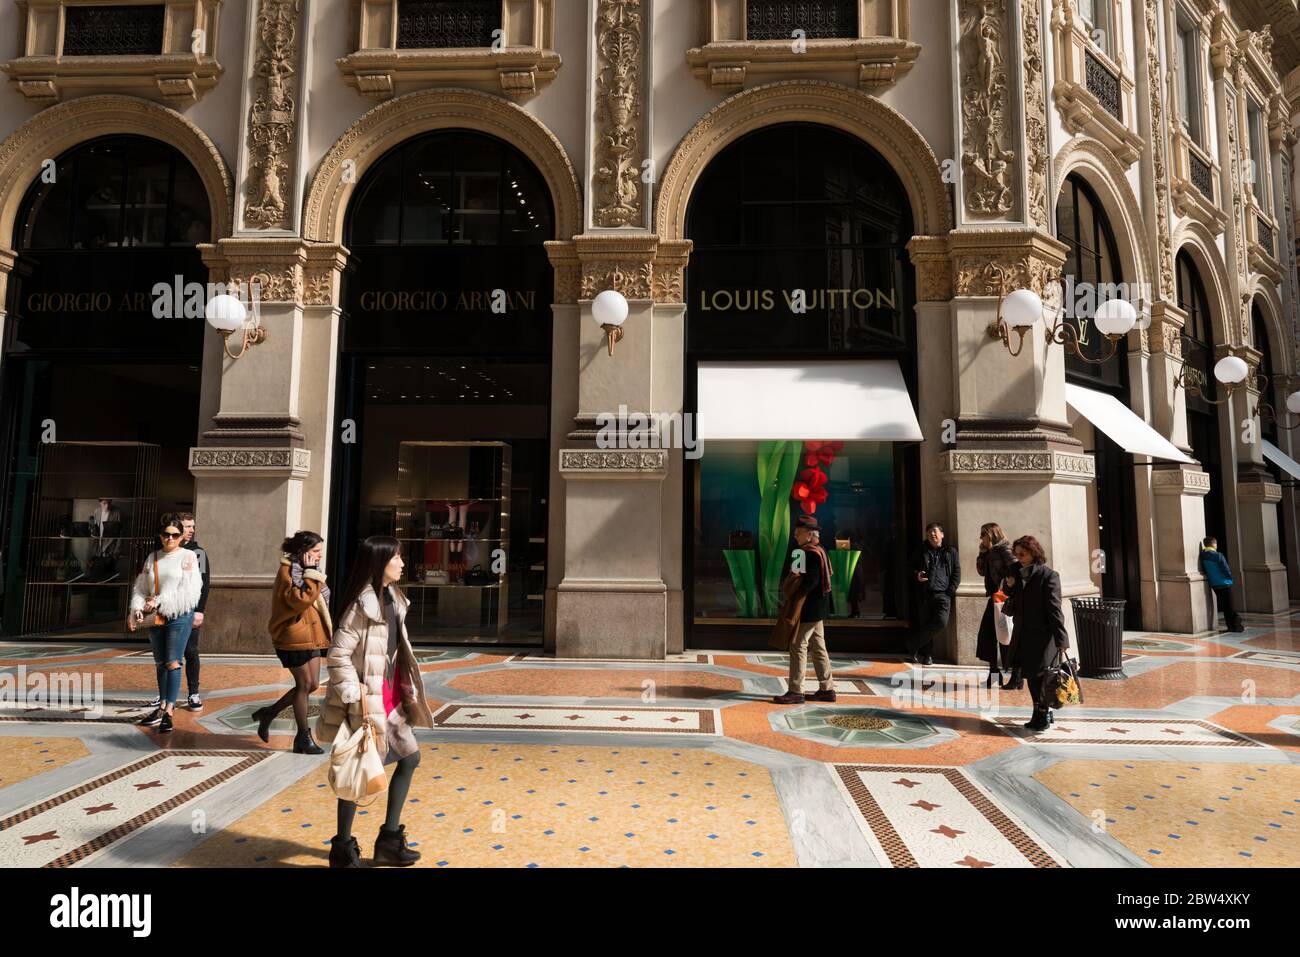 MILANO, ITALIA - 16 MARZO 2018: Immagine orizzontale della gente alla Galleria Vittorio Emanuele II, un antico centro commerciale di Milano Foto Stock